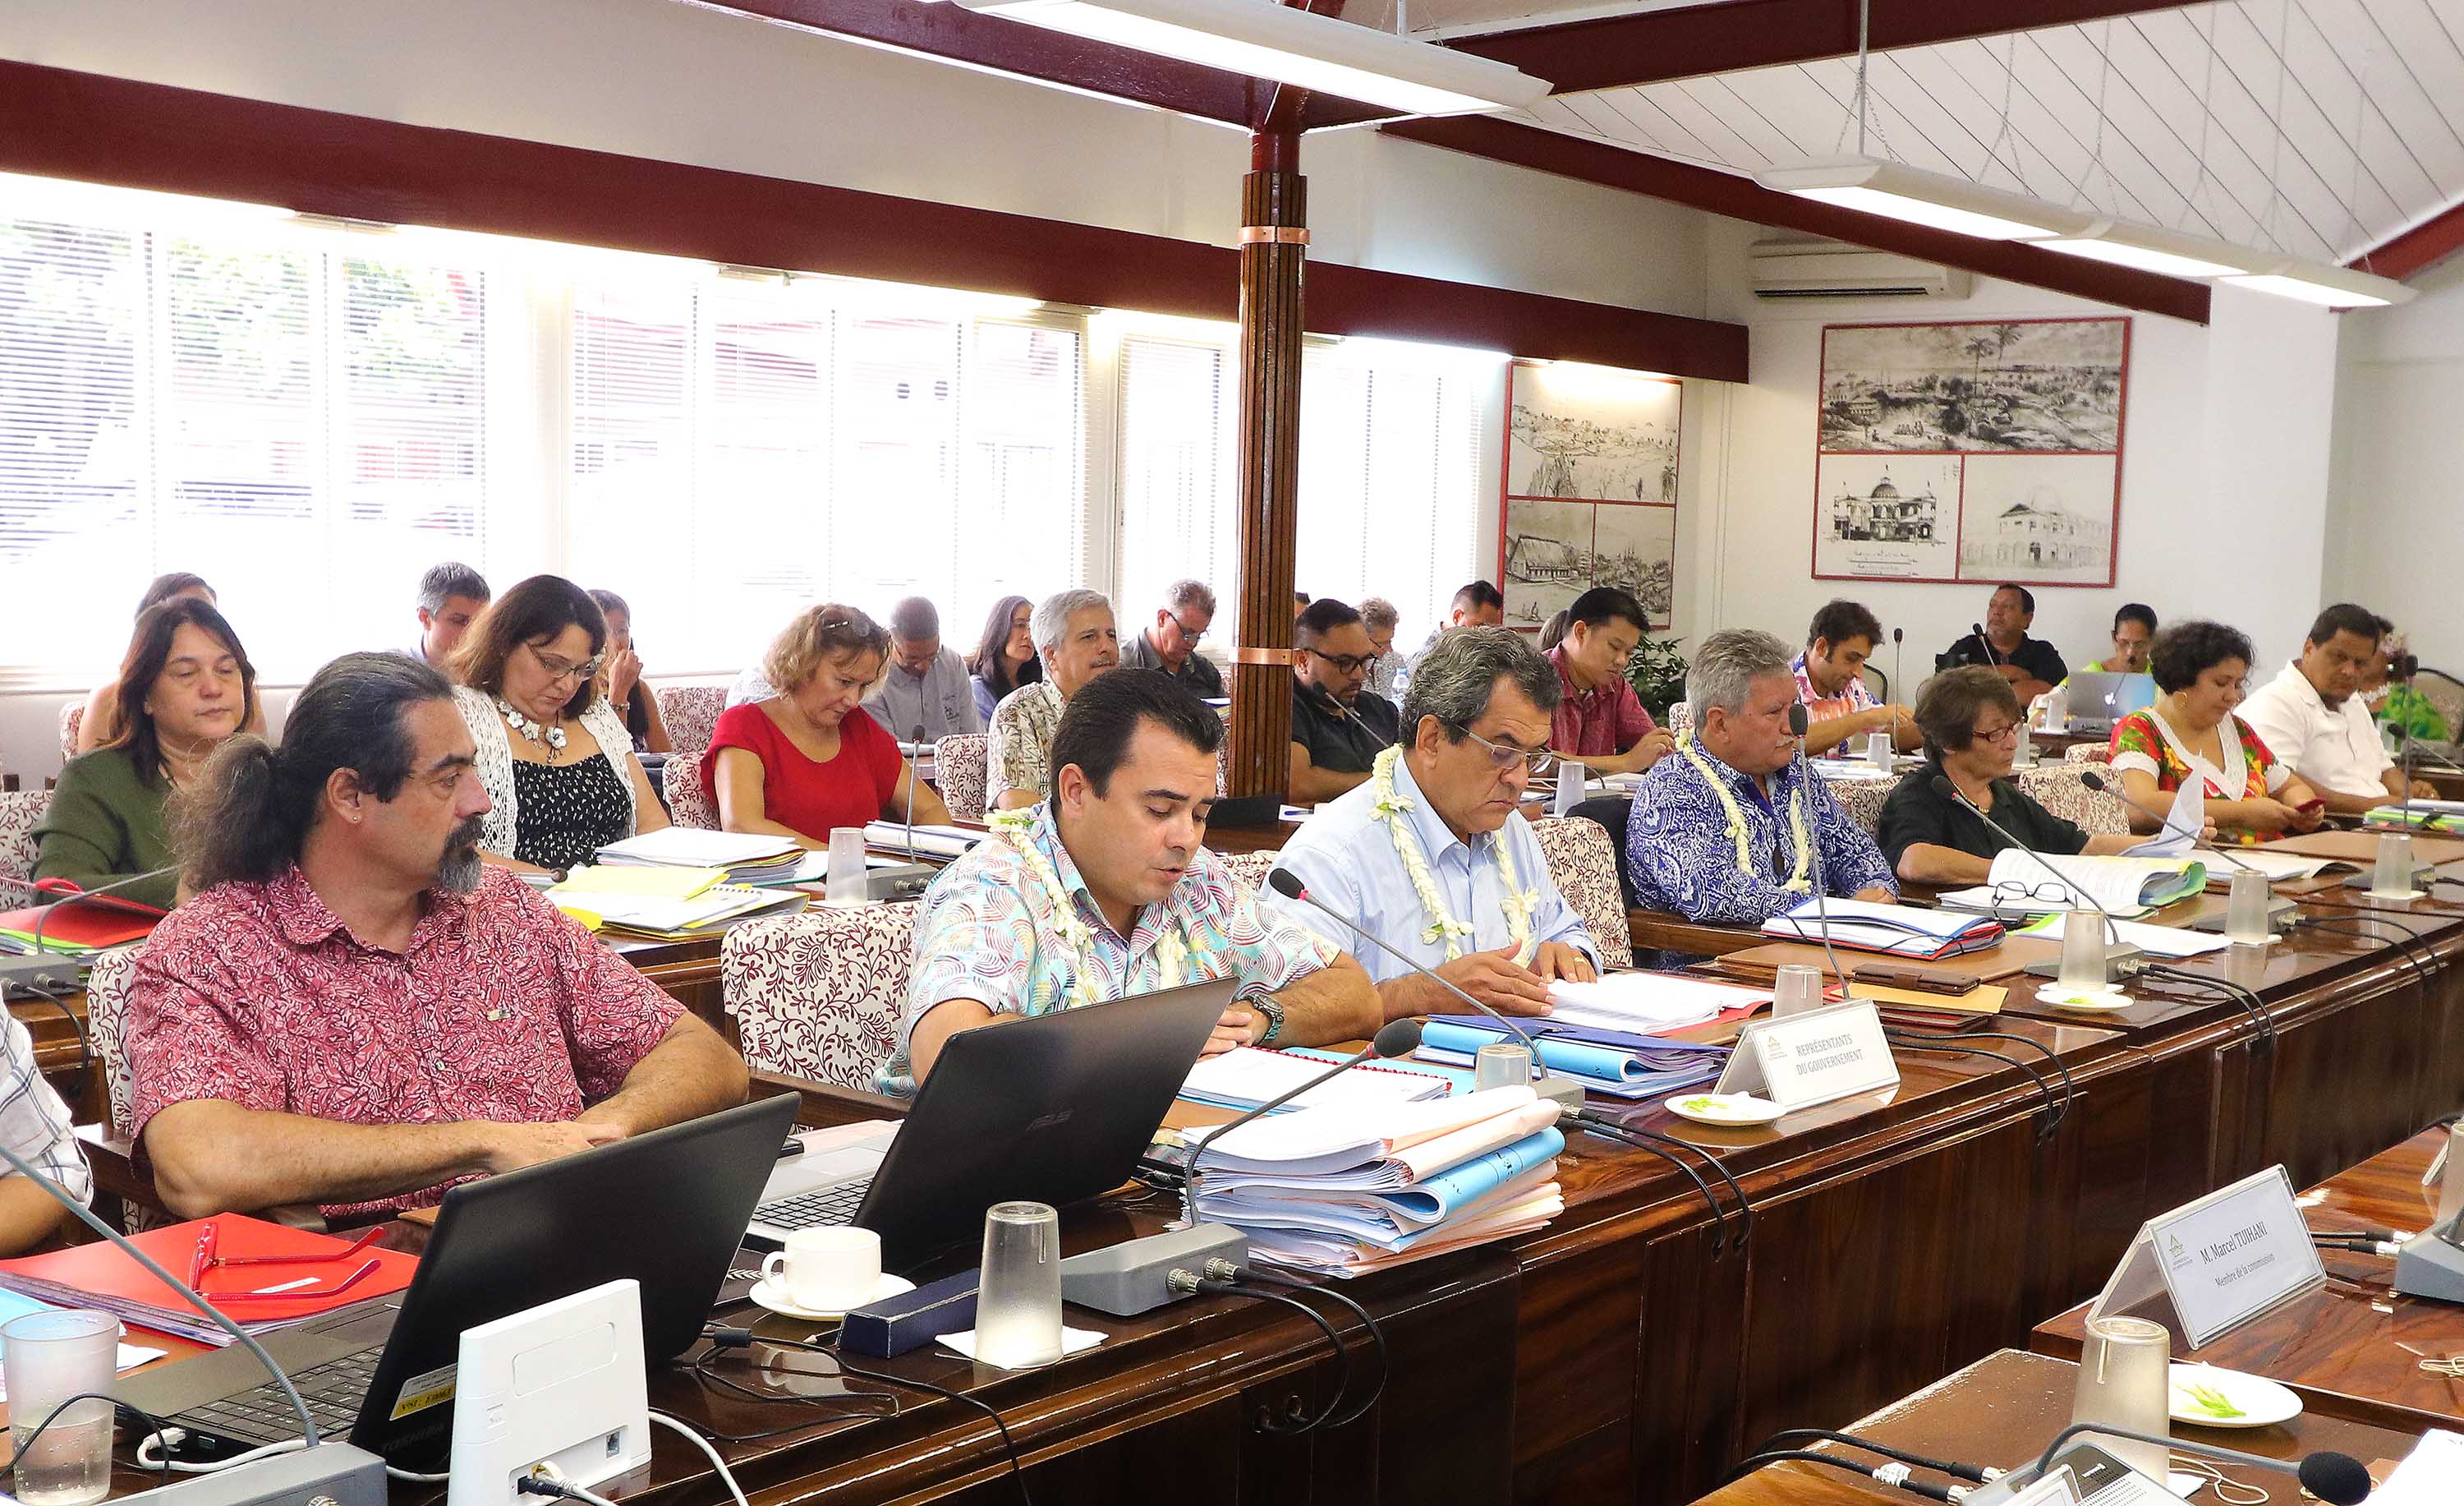 La commission de l'Economie et des Finances de l'Assemblée de la Polynésie française examine le projet de budget général 2018